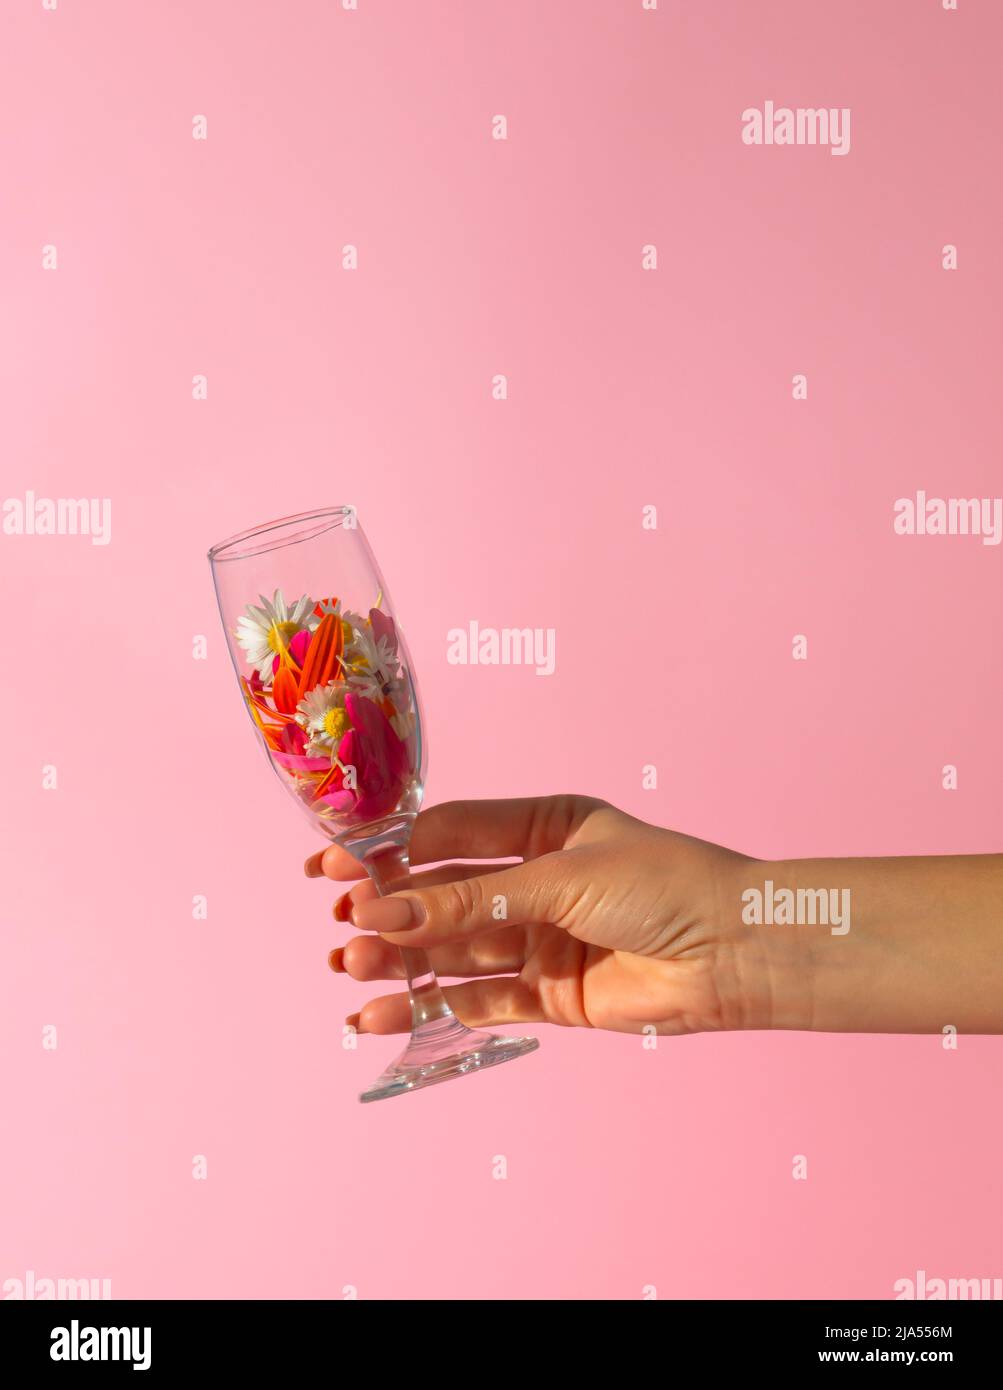 Une main de femme tient une coupe de champagne remplie de fleurs de printemps sur fond rose. Concept de fête de saison minimale. Idée créative de l'été. Banque D'Images